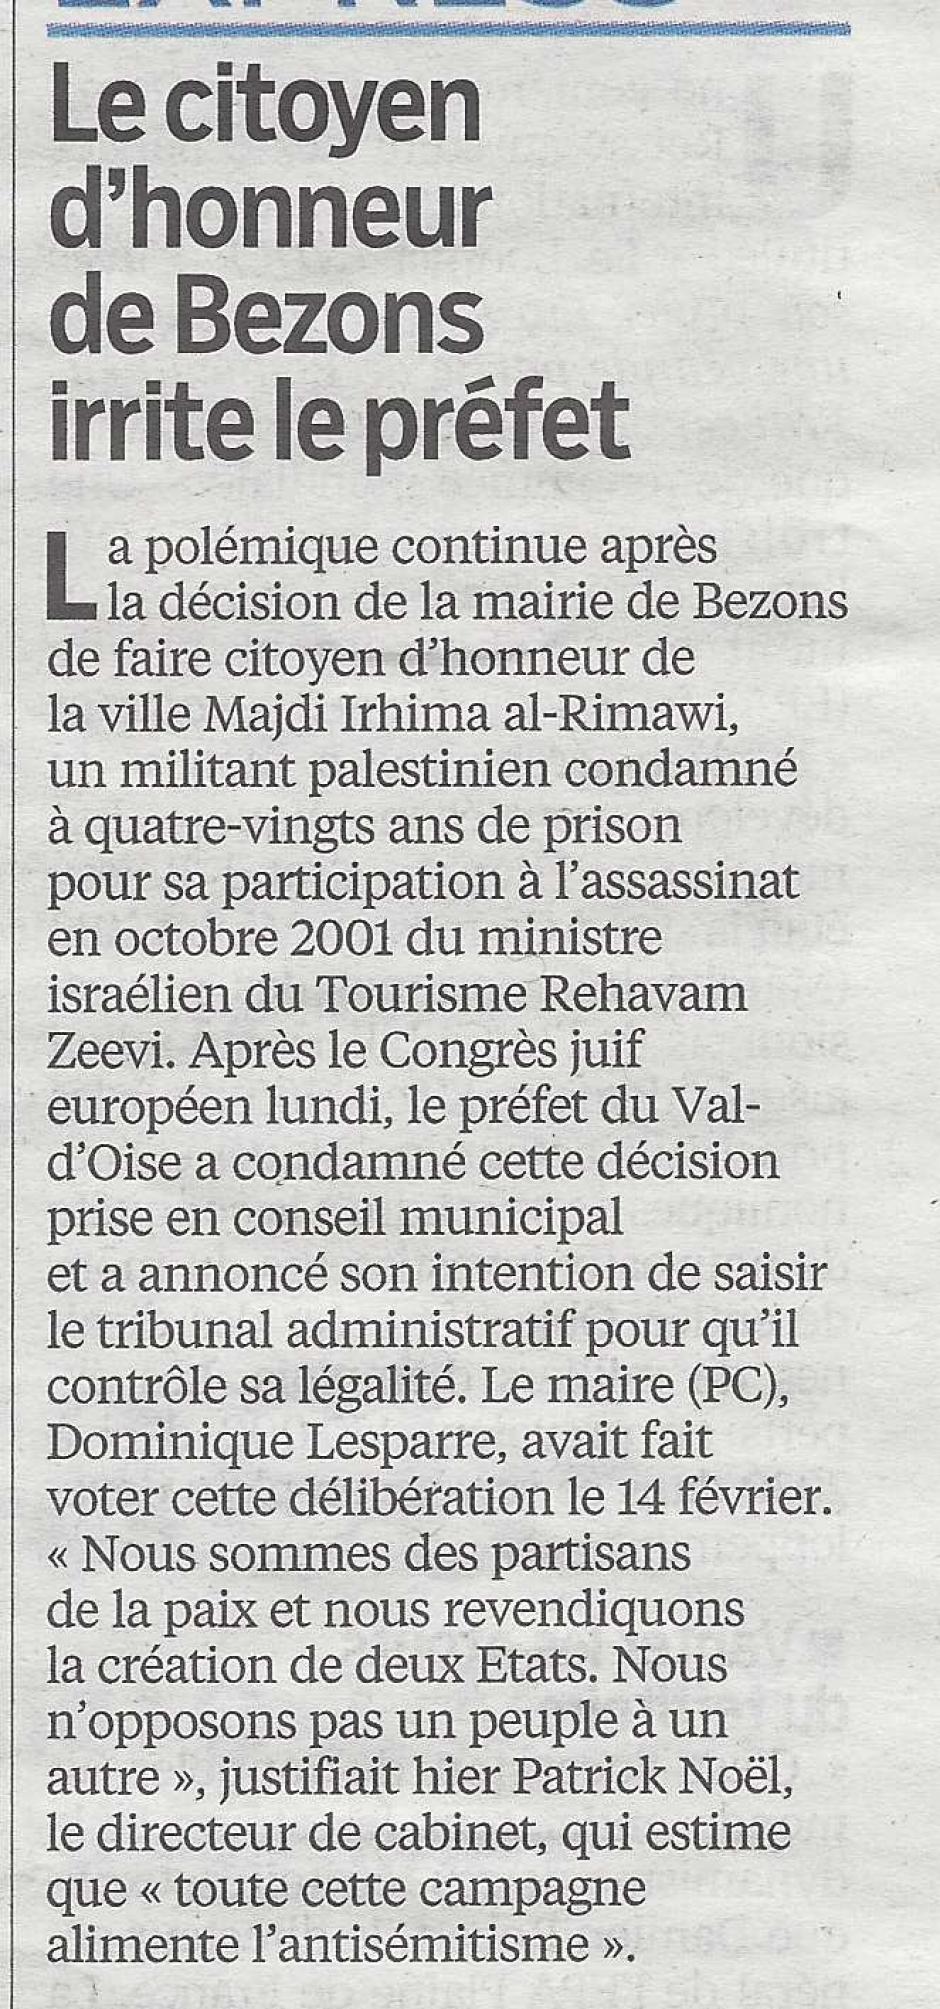 Le citoyen d'honneur de Bezons irrite le préfet, le Parisien 95 du 14 mars